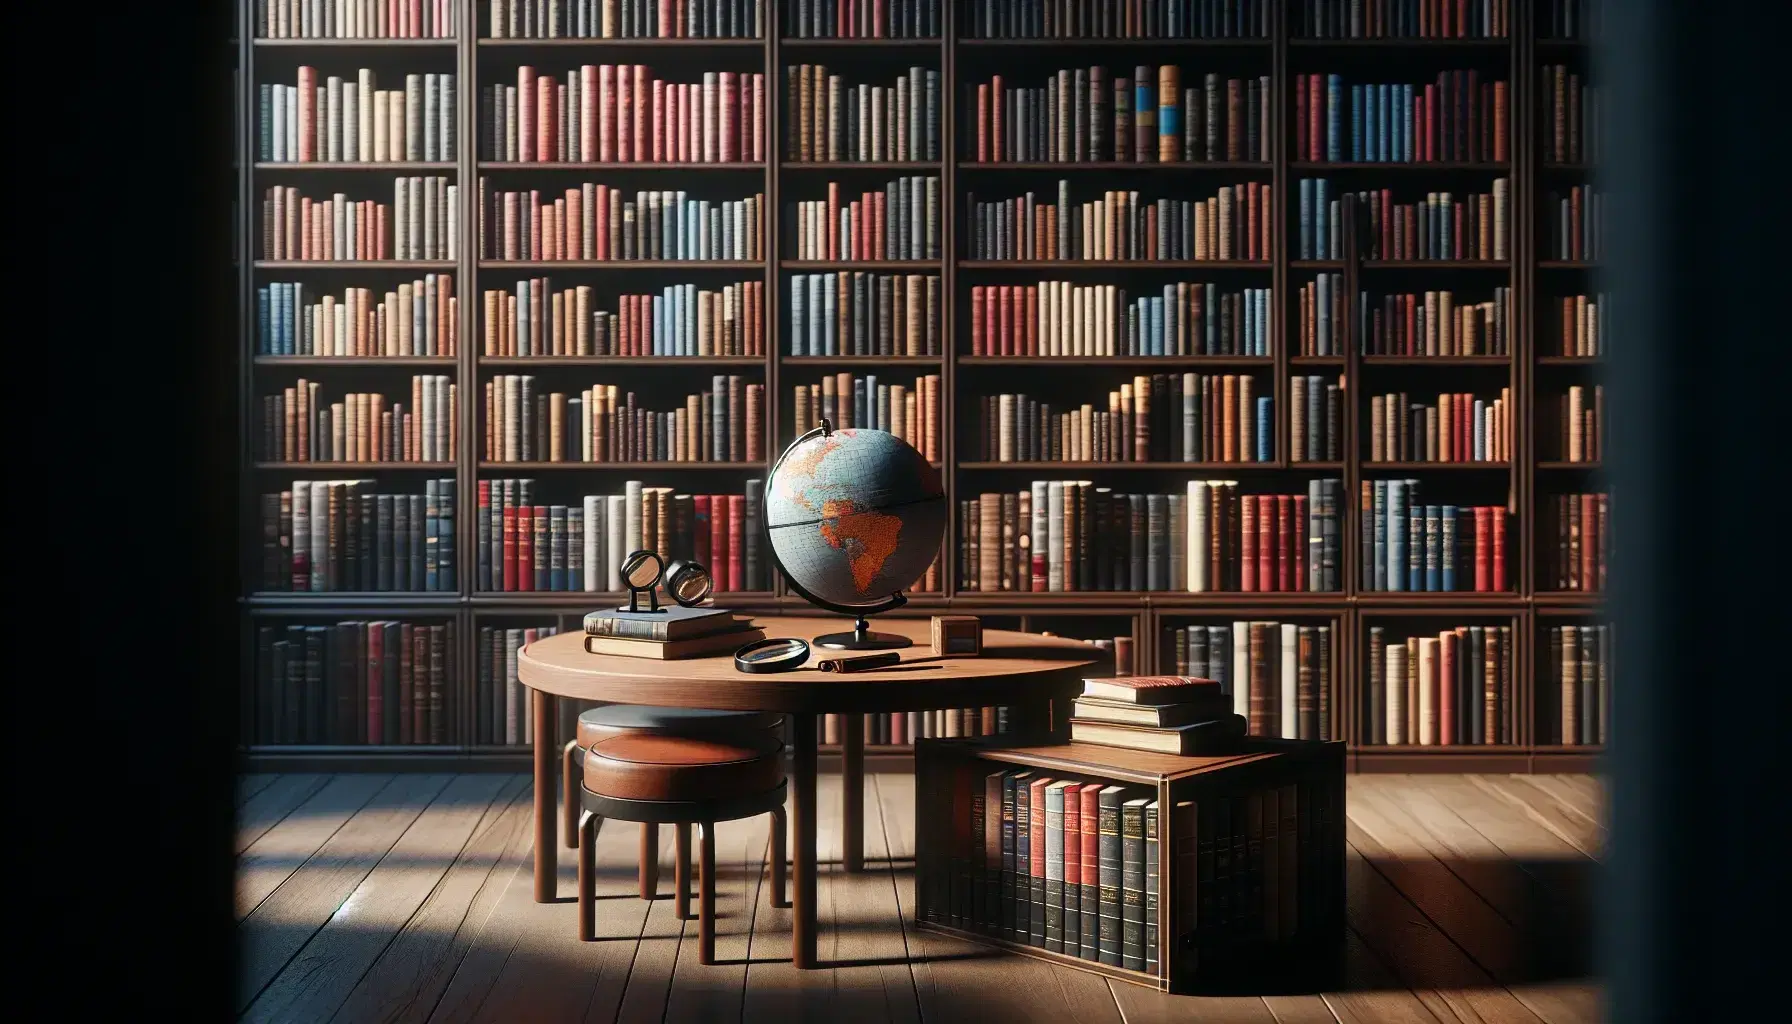 Biblioteca con estantes de madera oscura llenos de libros coloridos, mesa con globo terráqueo y lupa, ambiente cálido y acogedor.